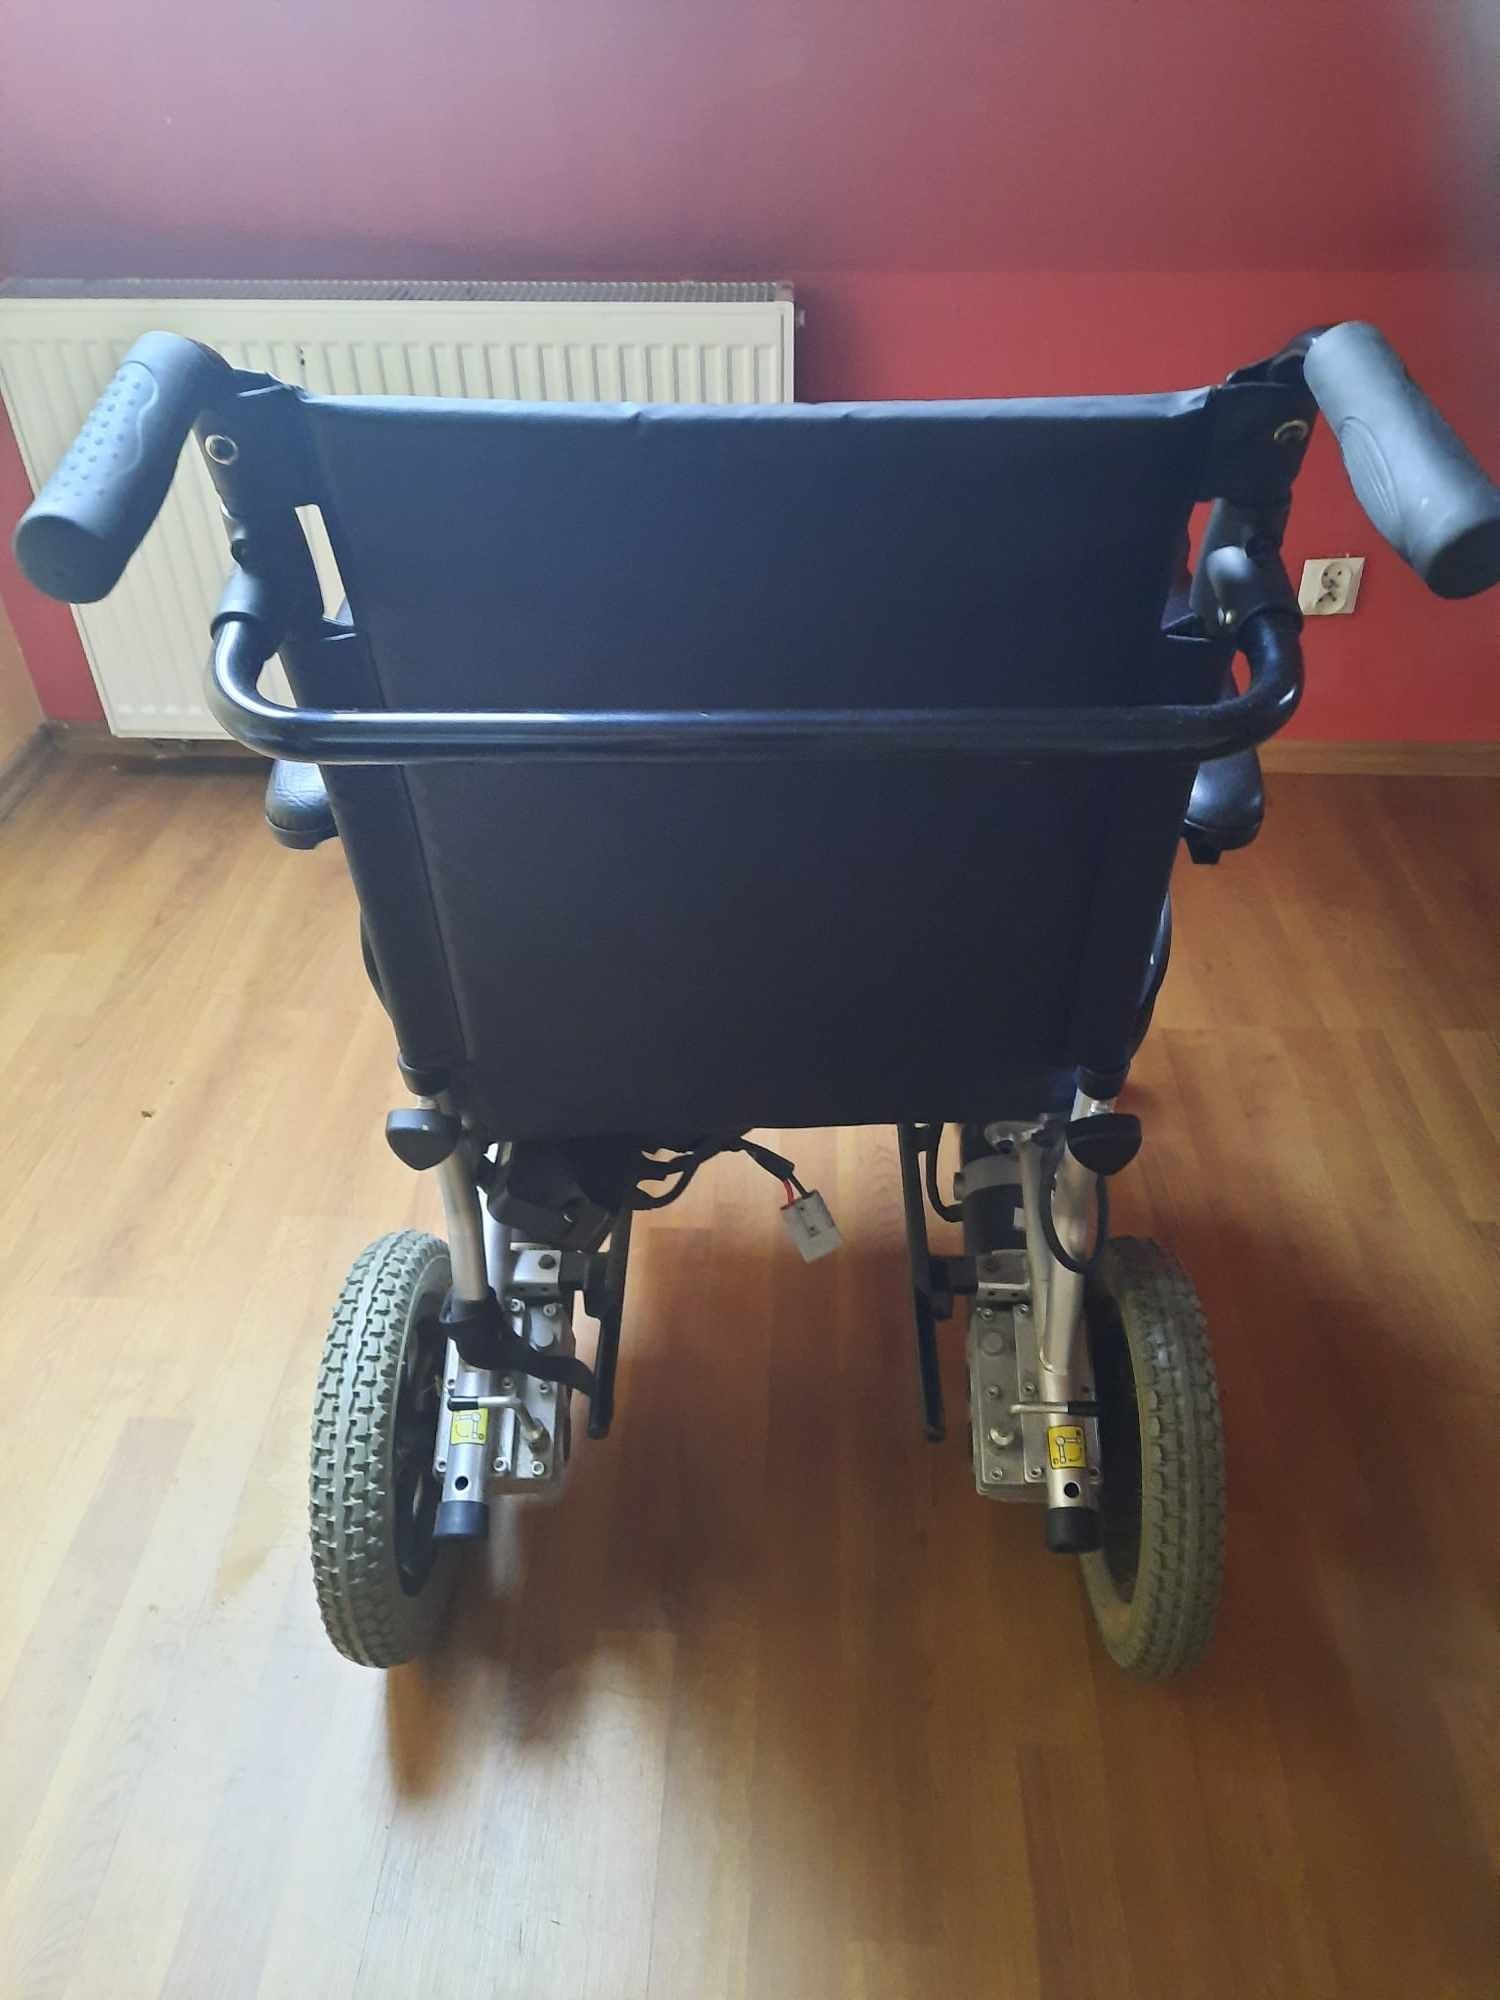 Sprzedam wózek inwalidzki elektryczny